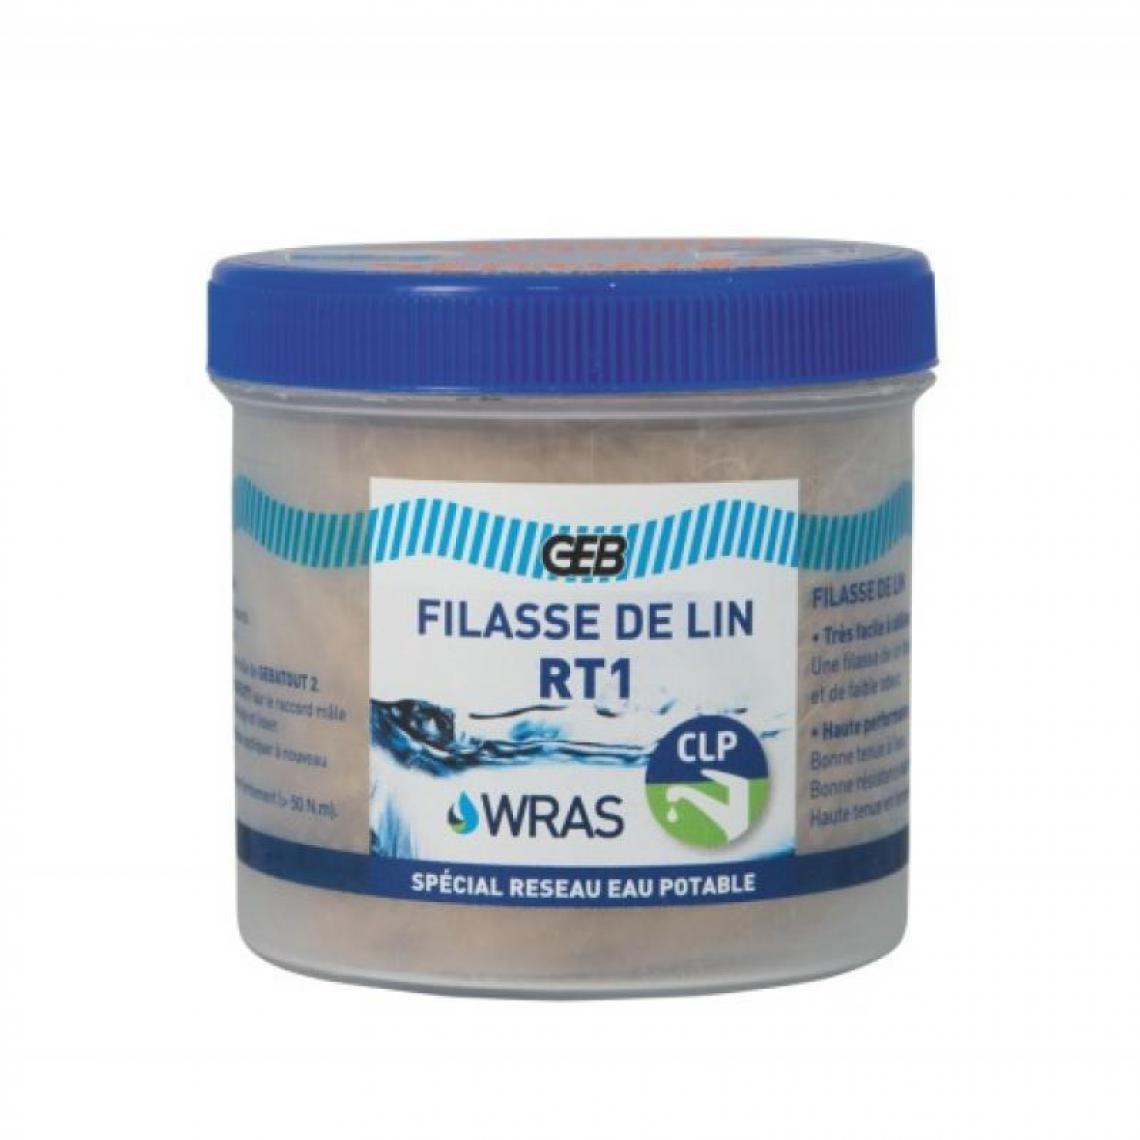 Geb - Filasse de lin peignée RT1, Conformité eau potable associé avec le "GEBATOUT 2" pot de 200g - Mastic, silicone, joint